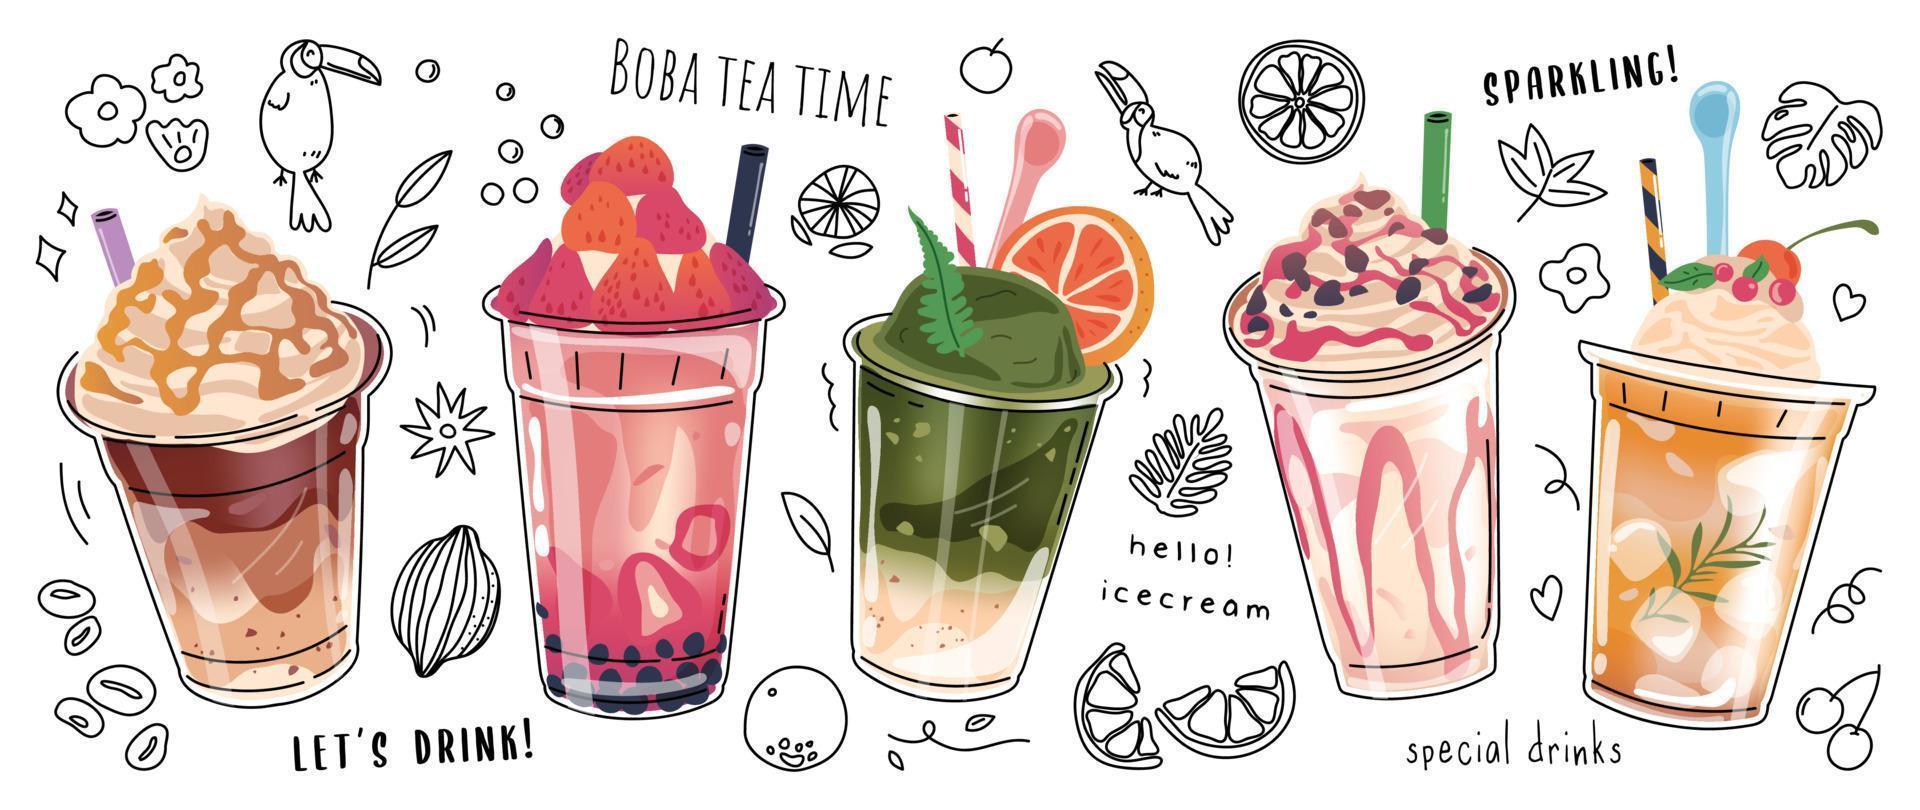 Bubble Milk Tea Special Promotions Design, Boba Milk Tea, Perlmilchtee, leckere Getränke, Kaffee, prickelnde Erfrischungsgetränke mit Logo und Werbebanner im Doodle-Stil, Poster. Vektor-Illustration. vektor